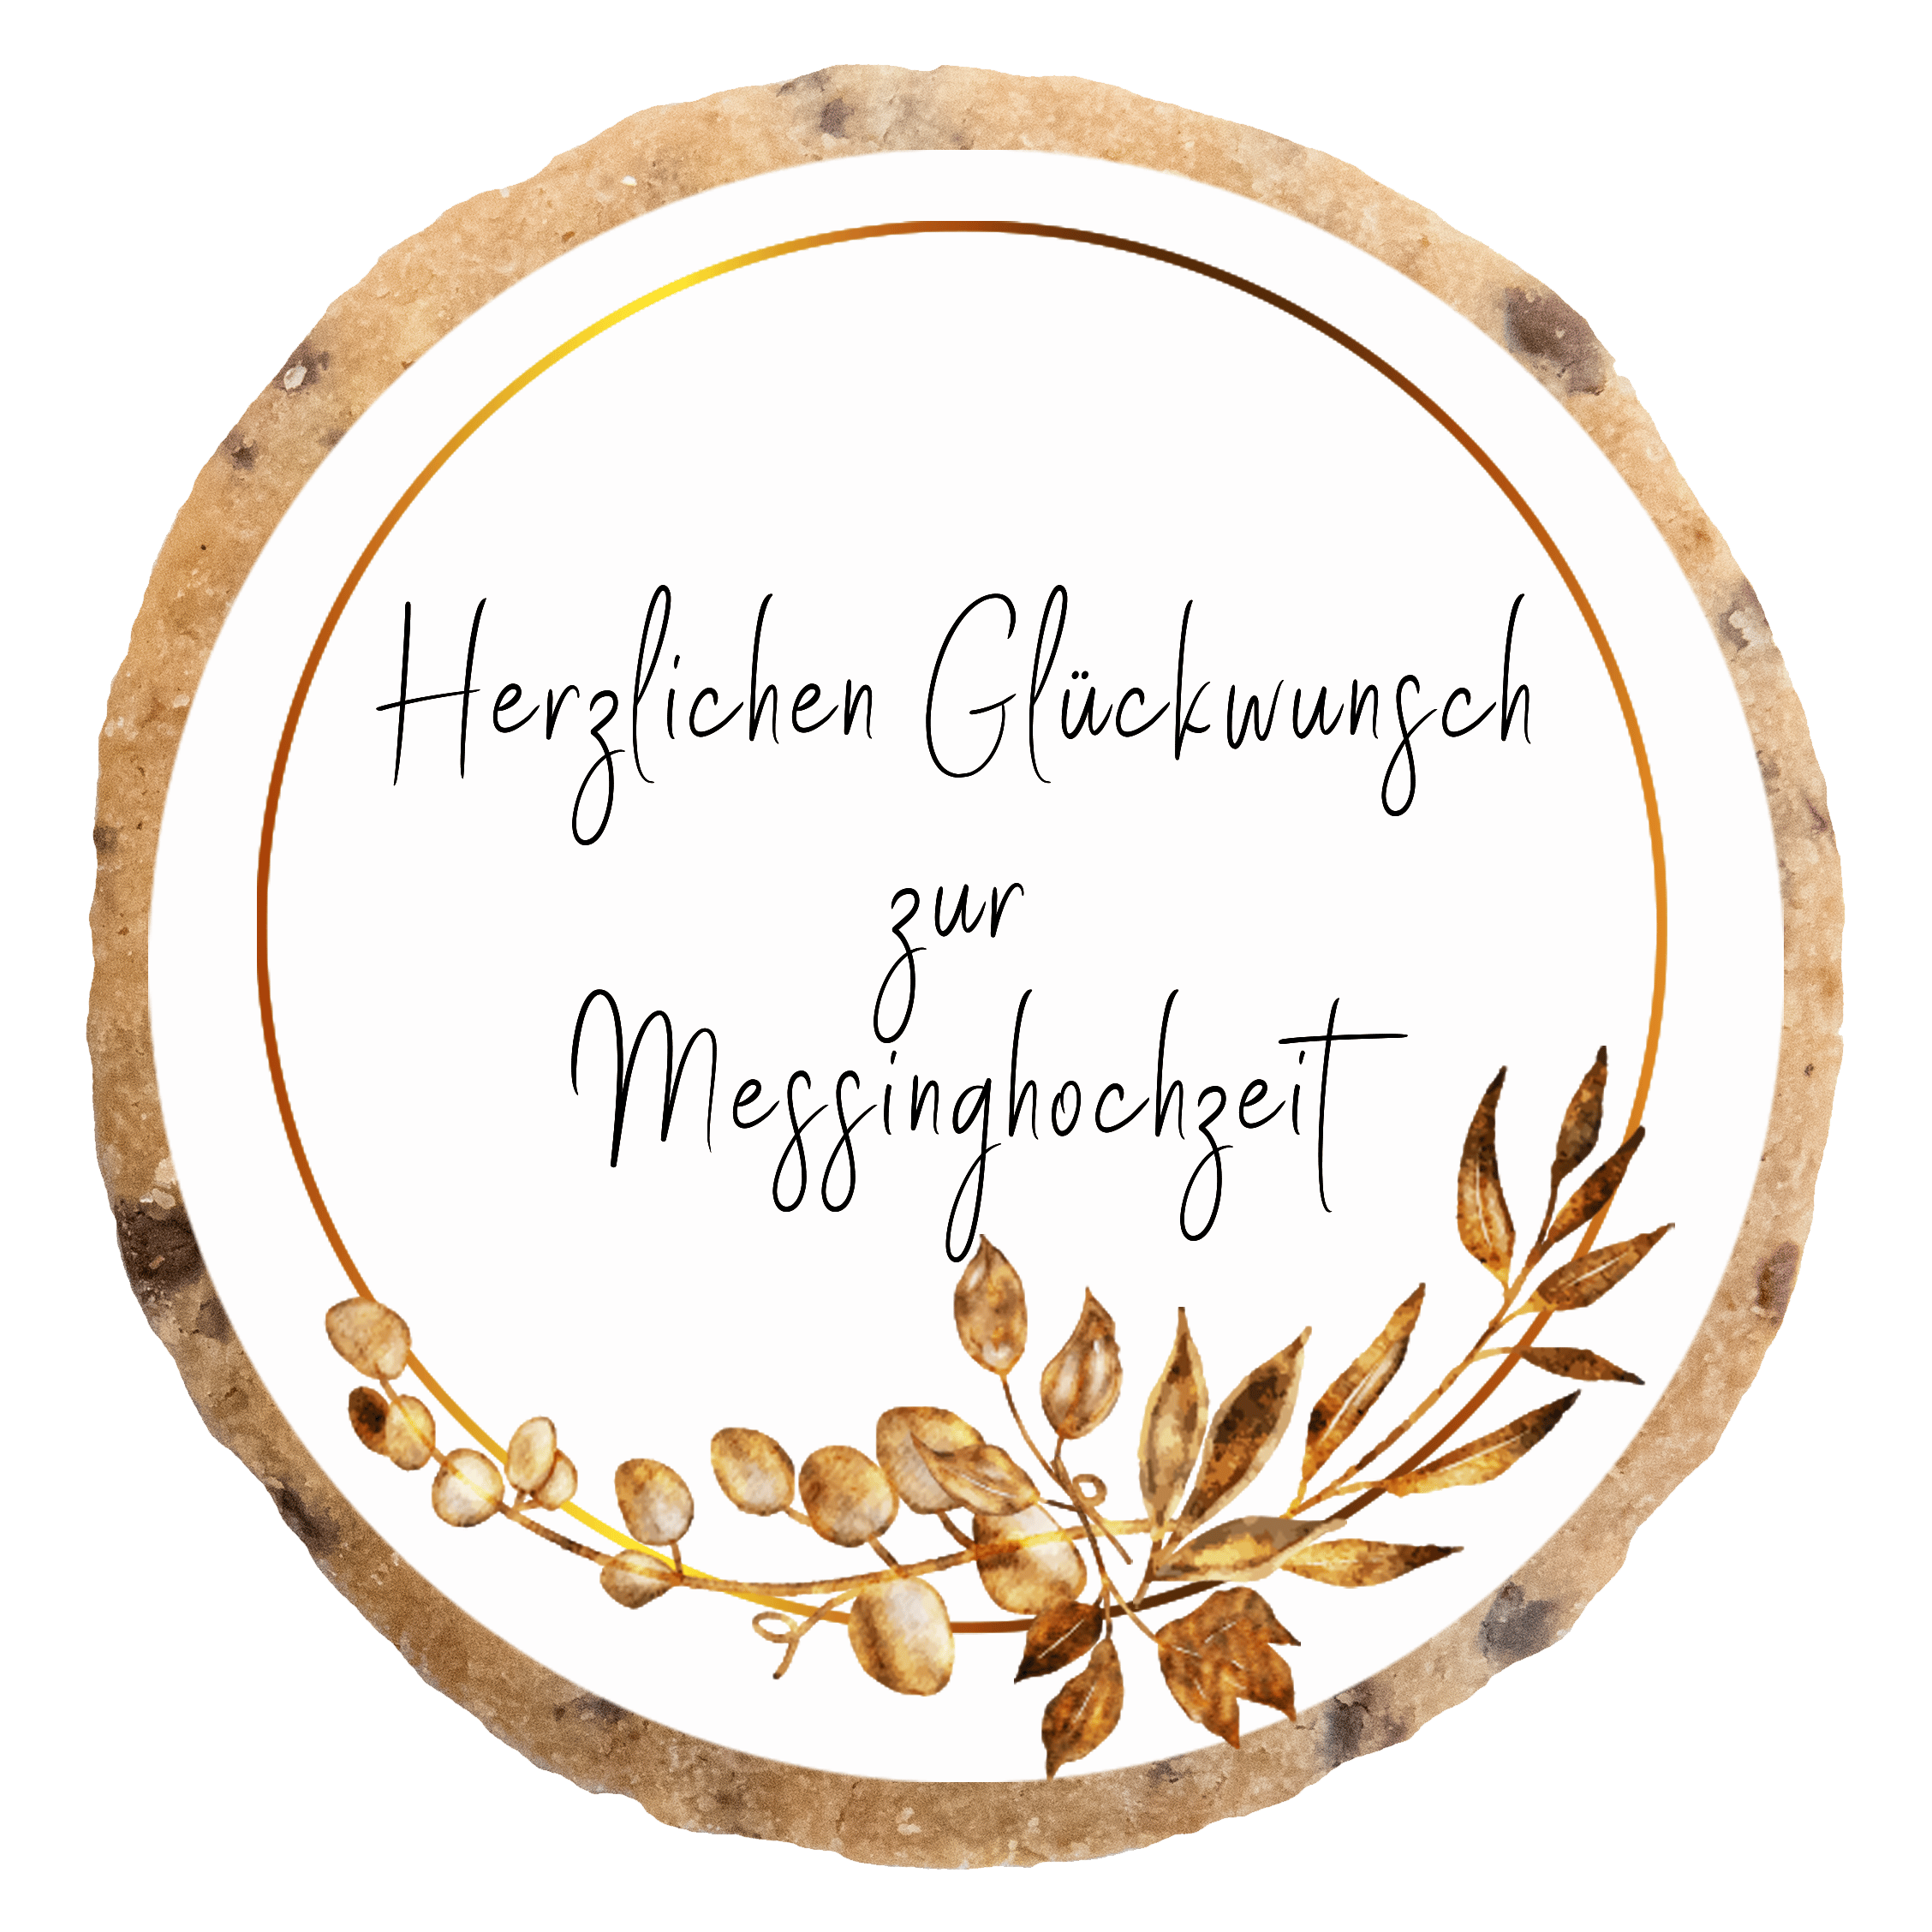 "Messinghochzeit" MotivKEKS